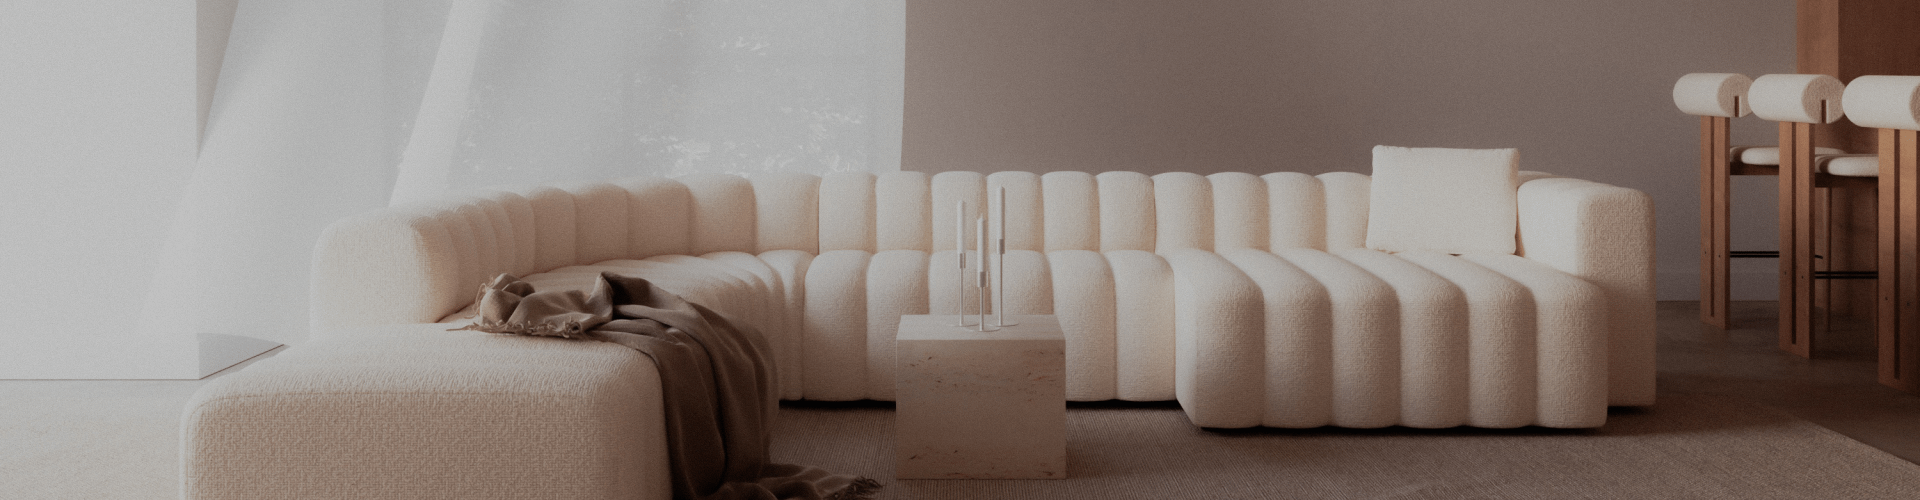 Un divano bianco in una stanza ben illuminata con mobili di design circostanti.